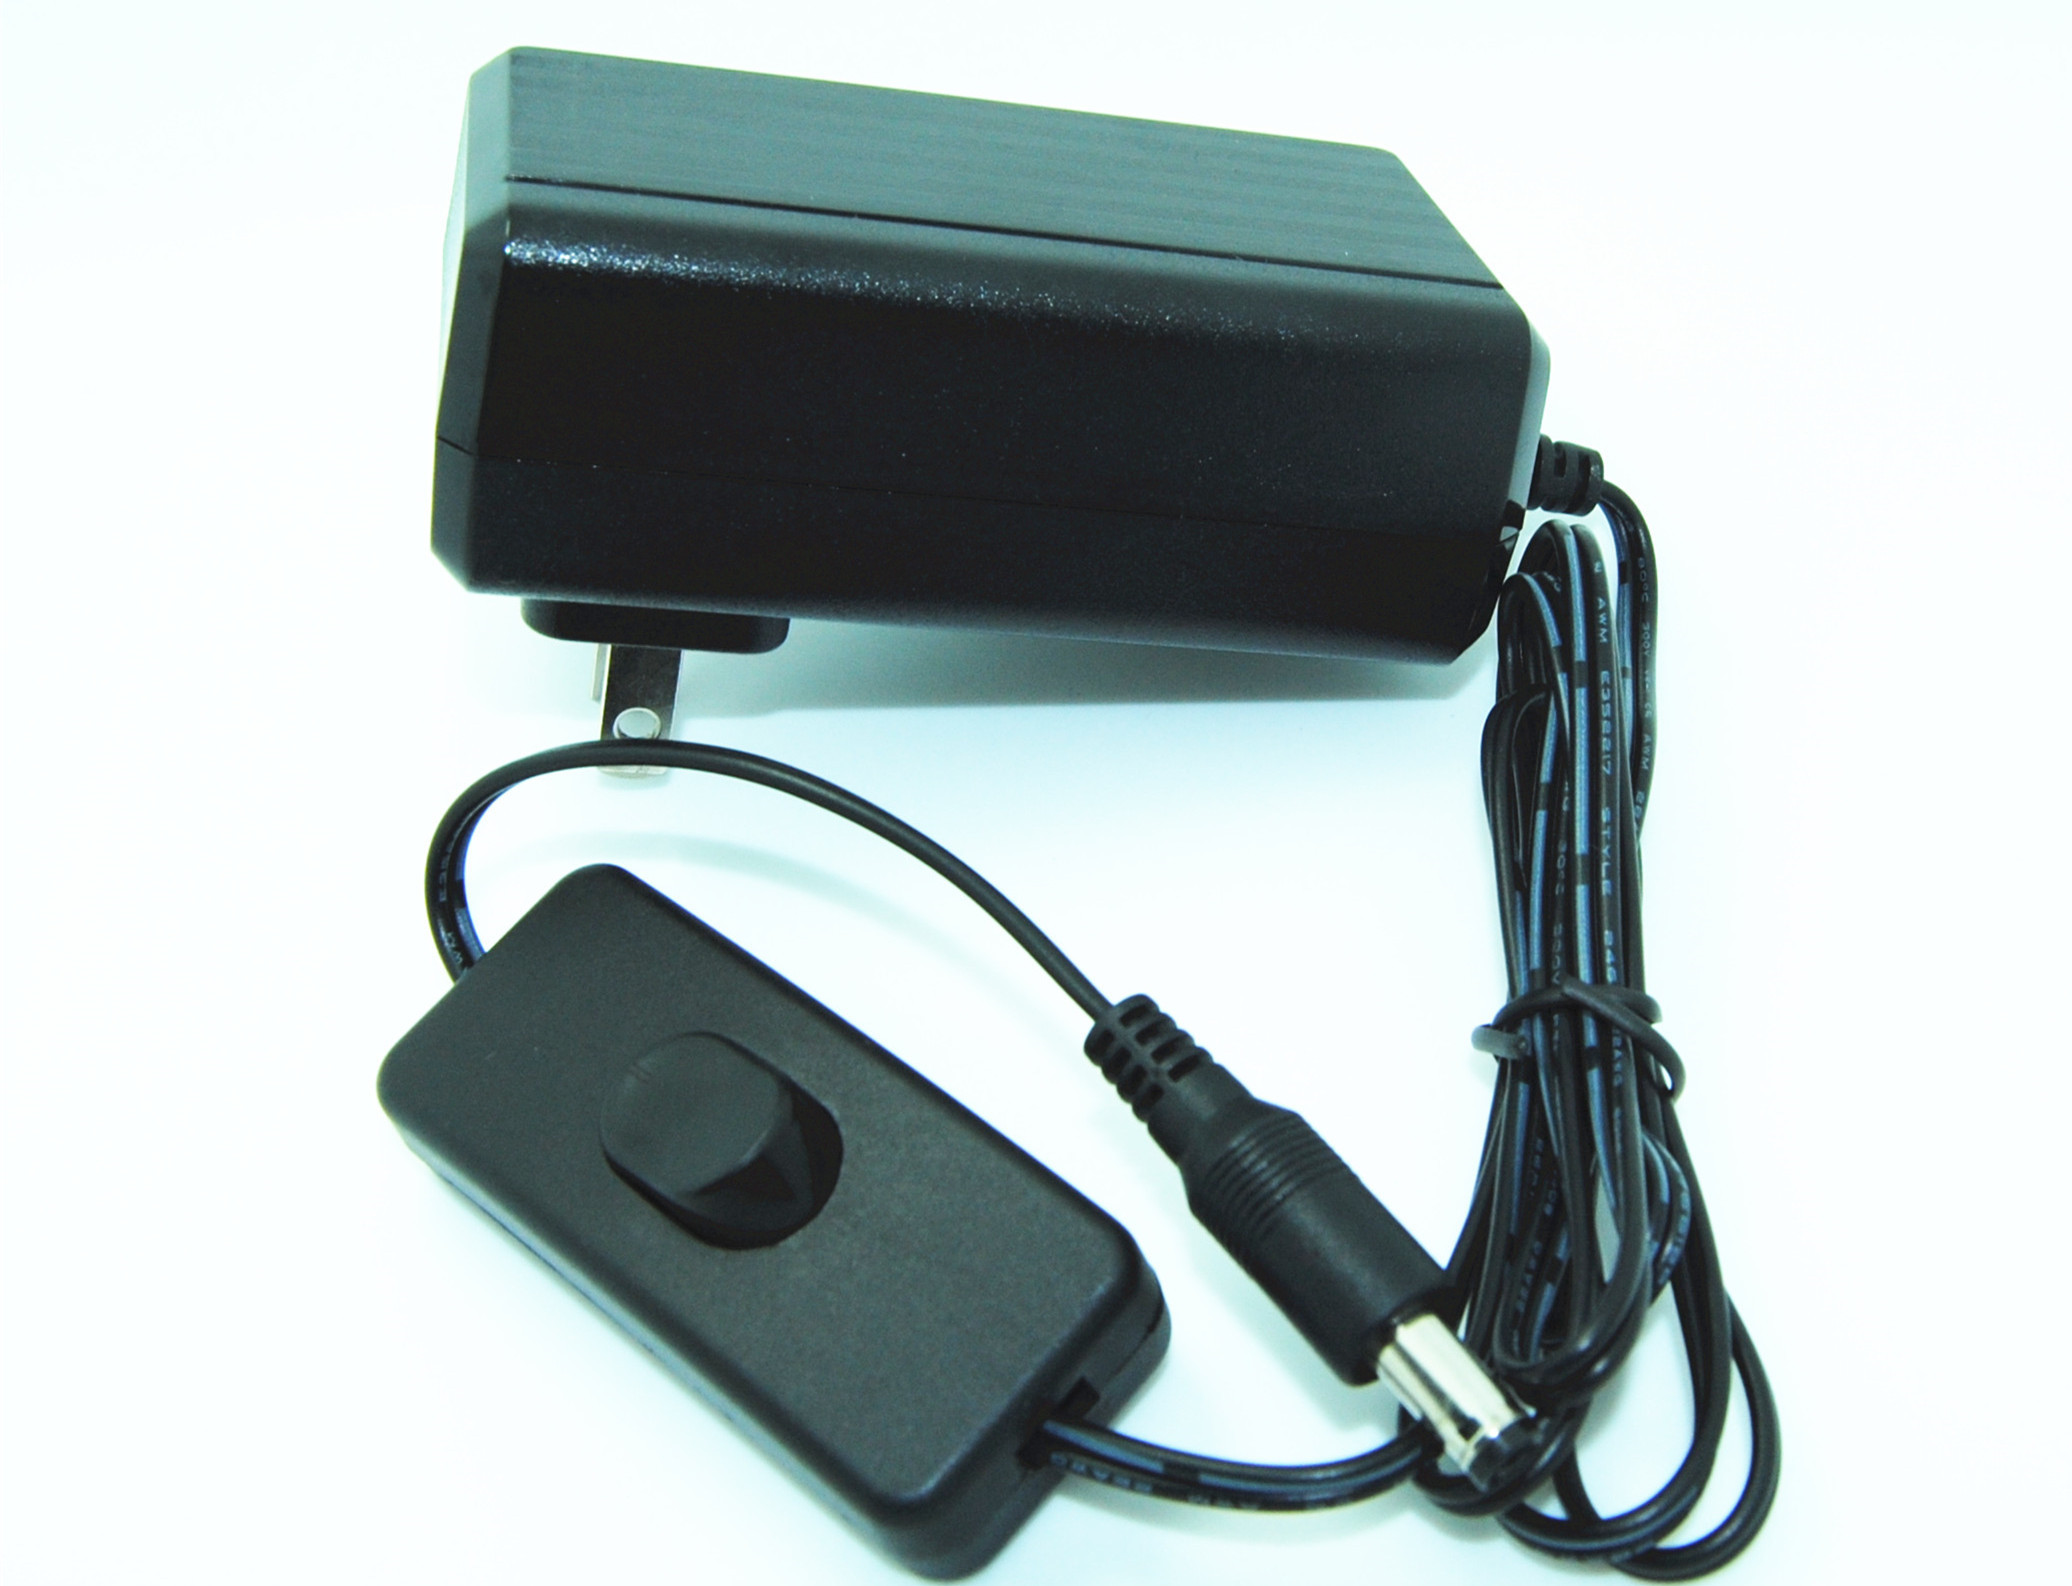 Переходника электропитания переключения DC штырей американца 2 для ПК камер/таблетки CCTV